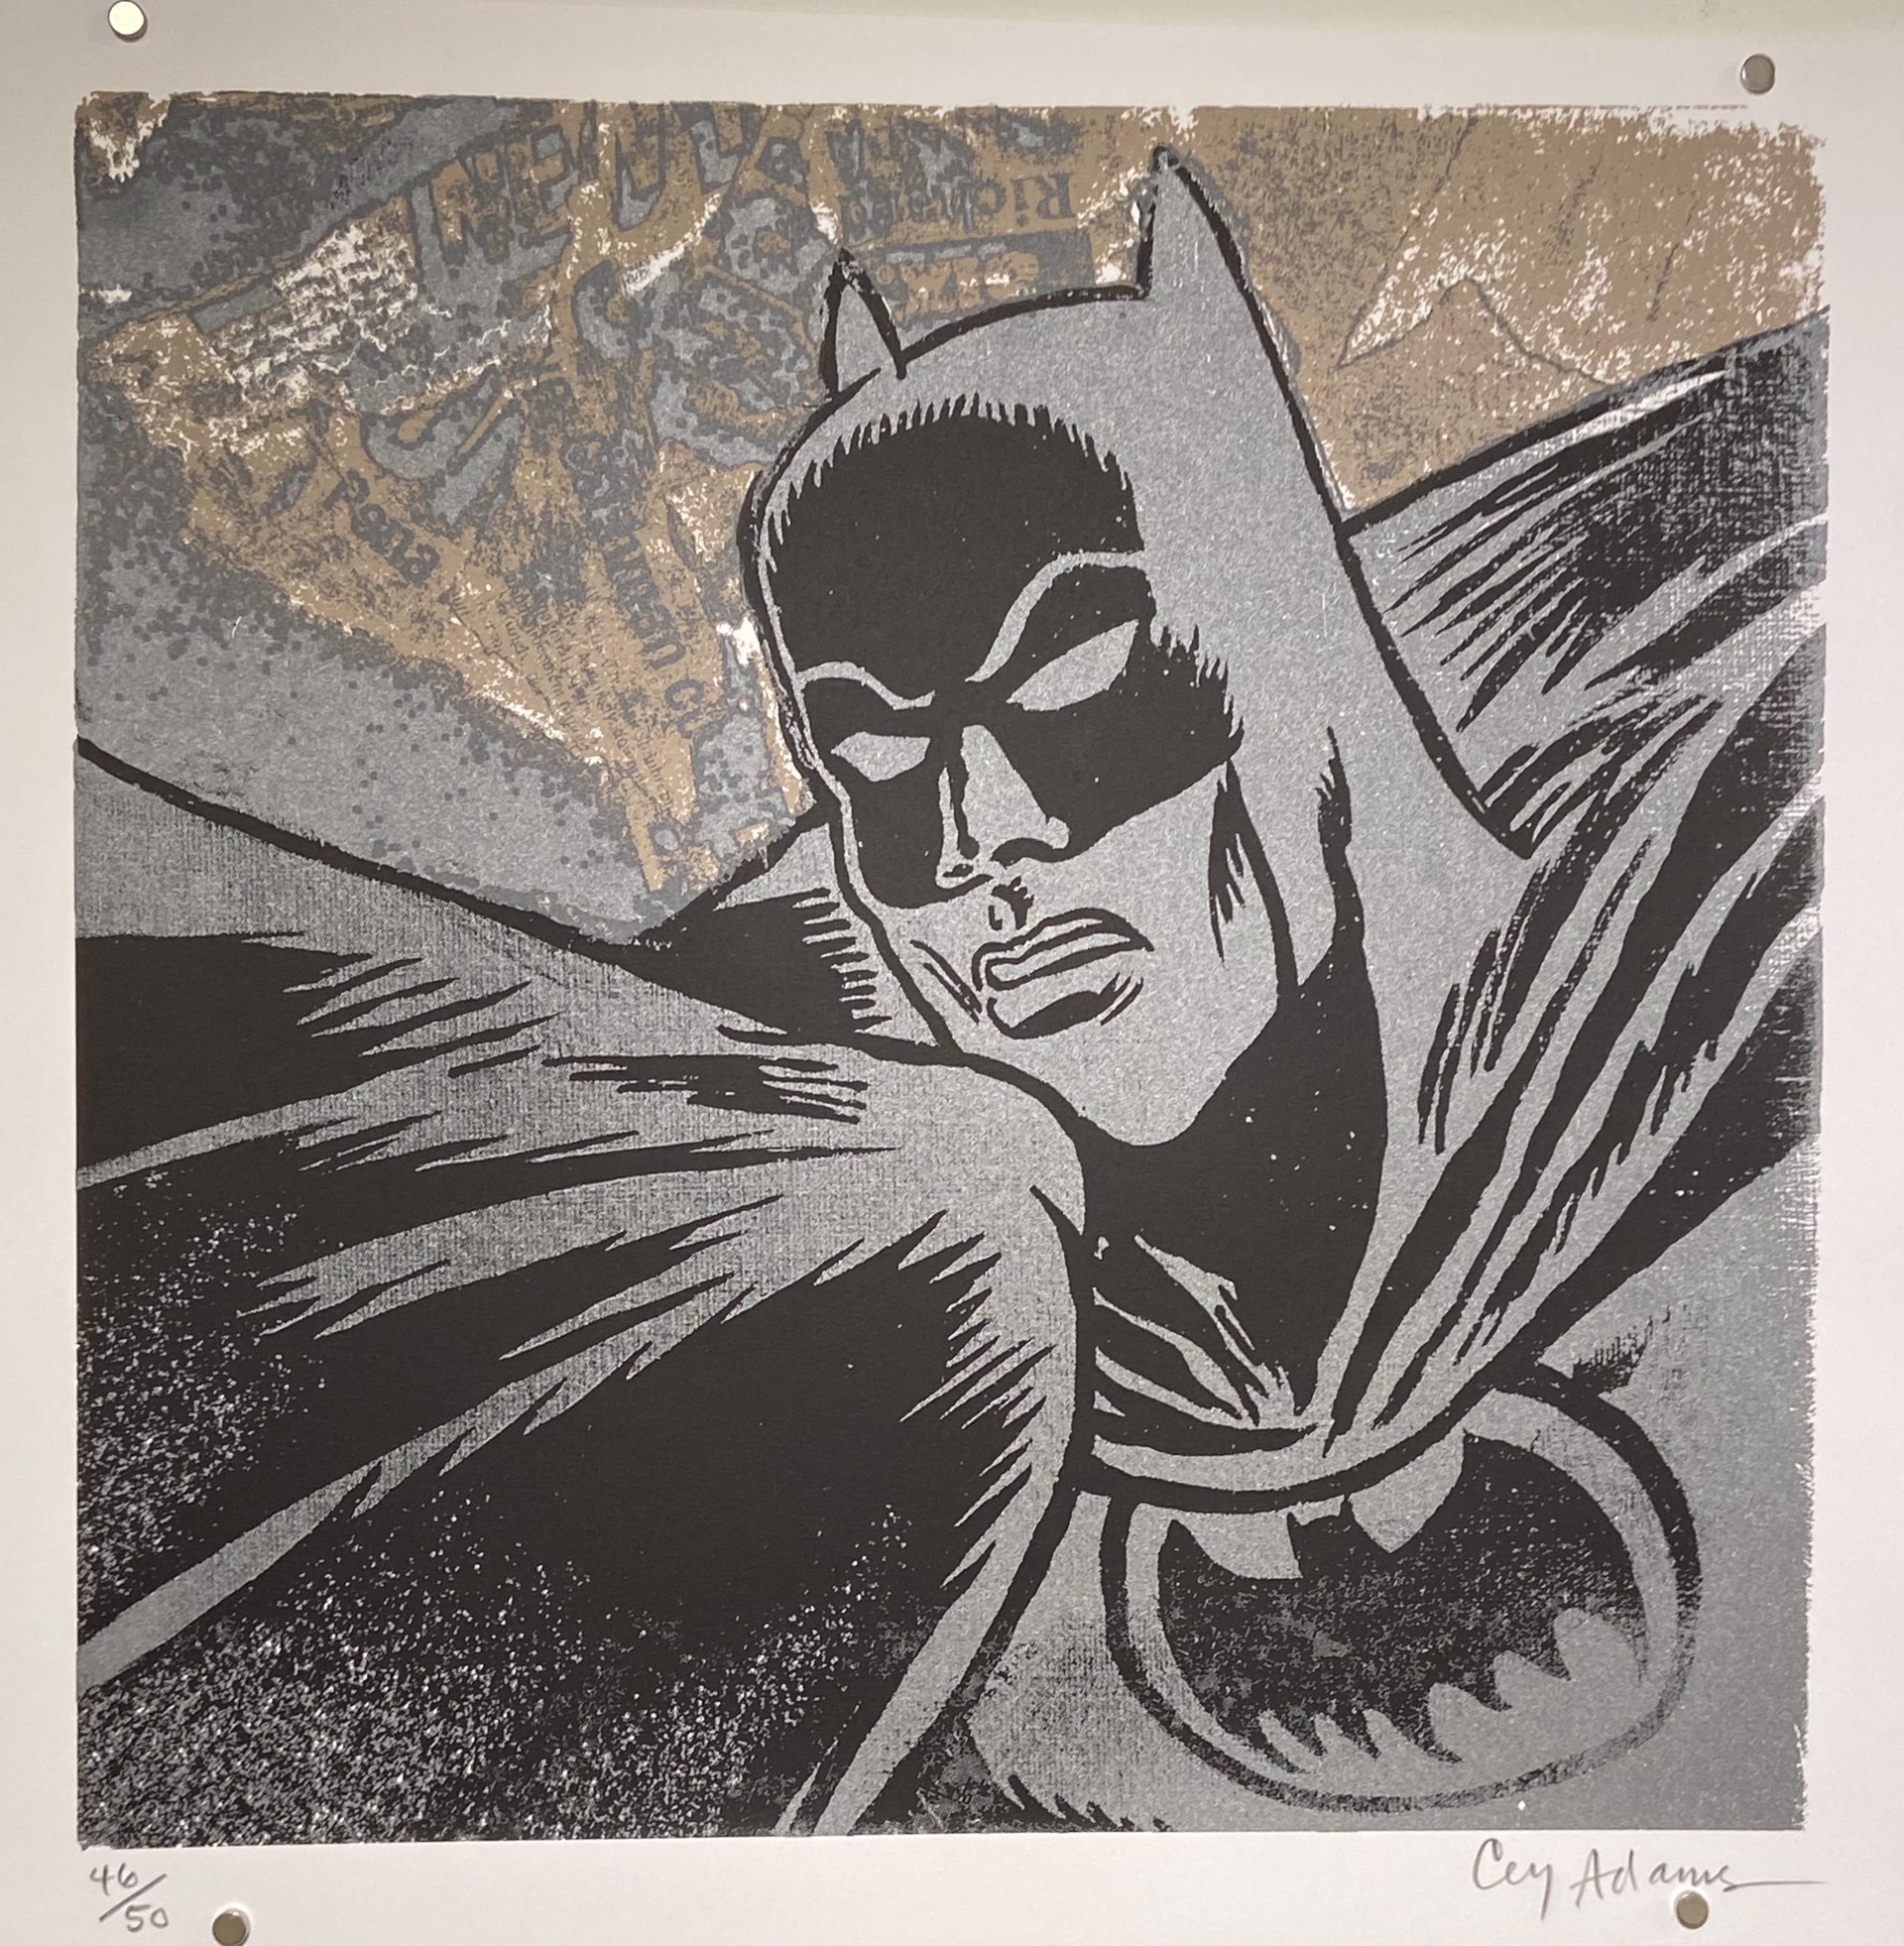 Batman (46/50) by Cey Adams